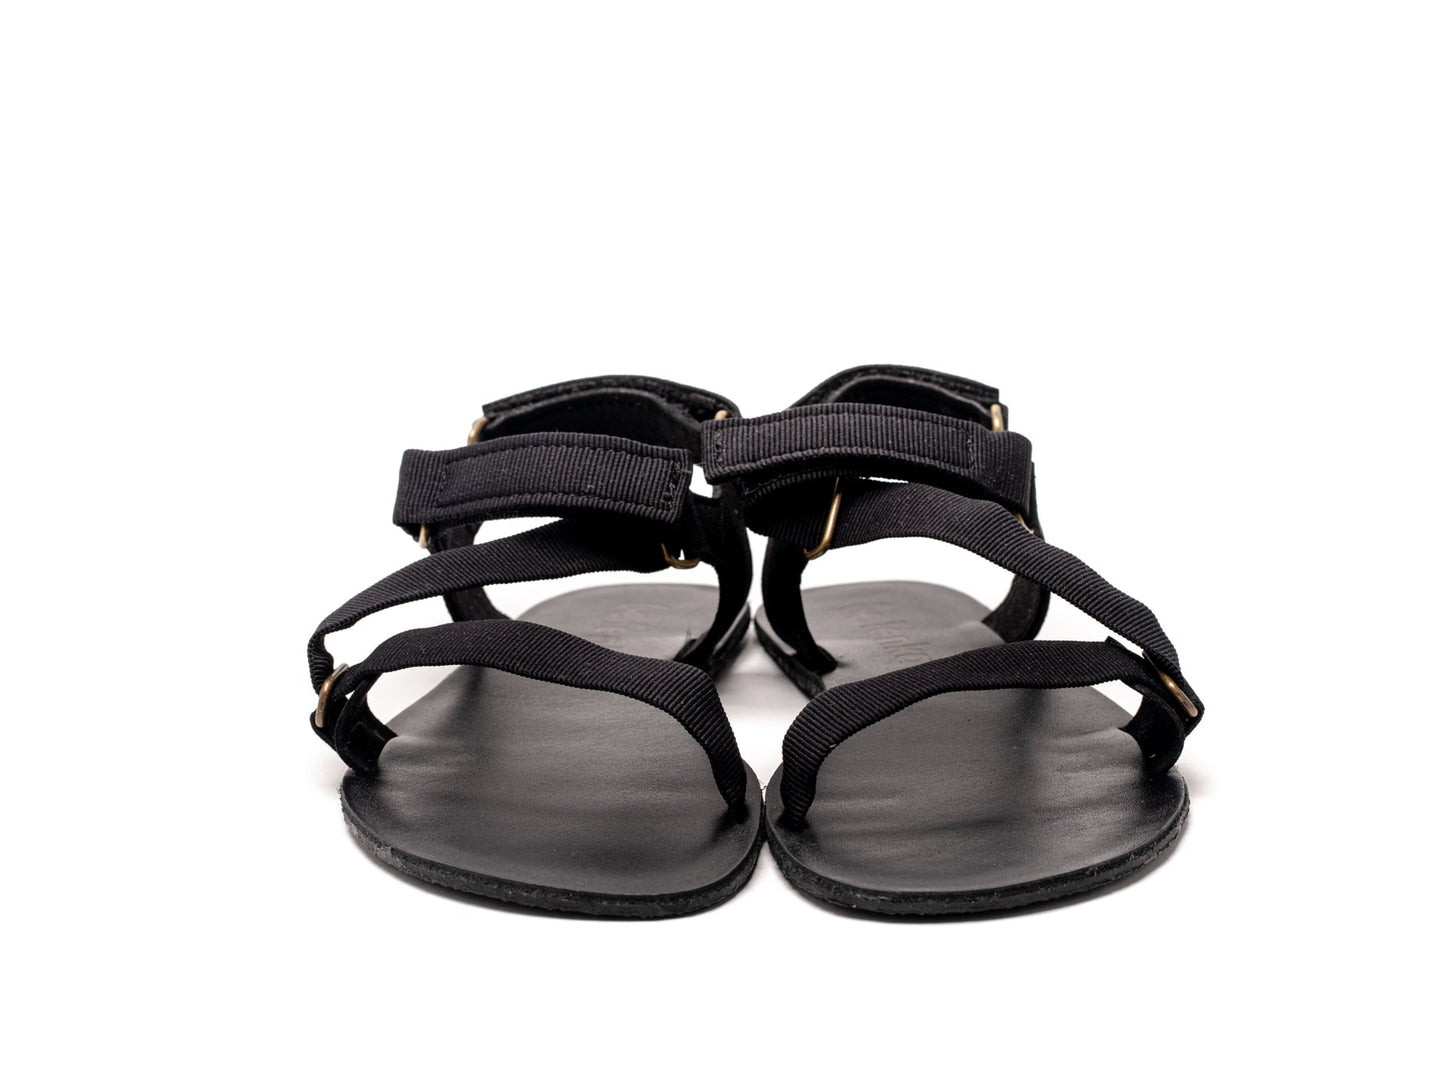 Barefoot Sandals - Be Lenka Flexi - Black-Be Lenka-Cacles Barefoot